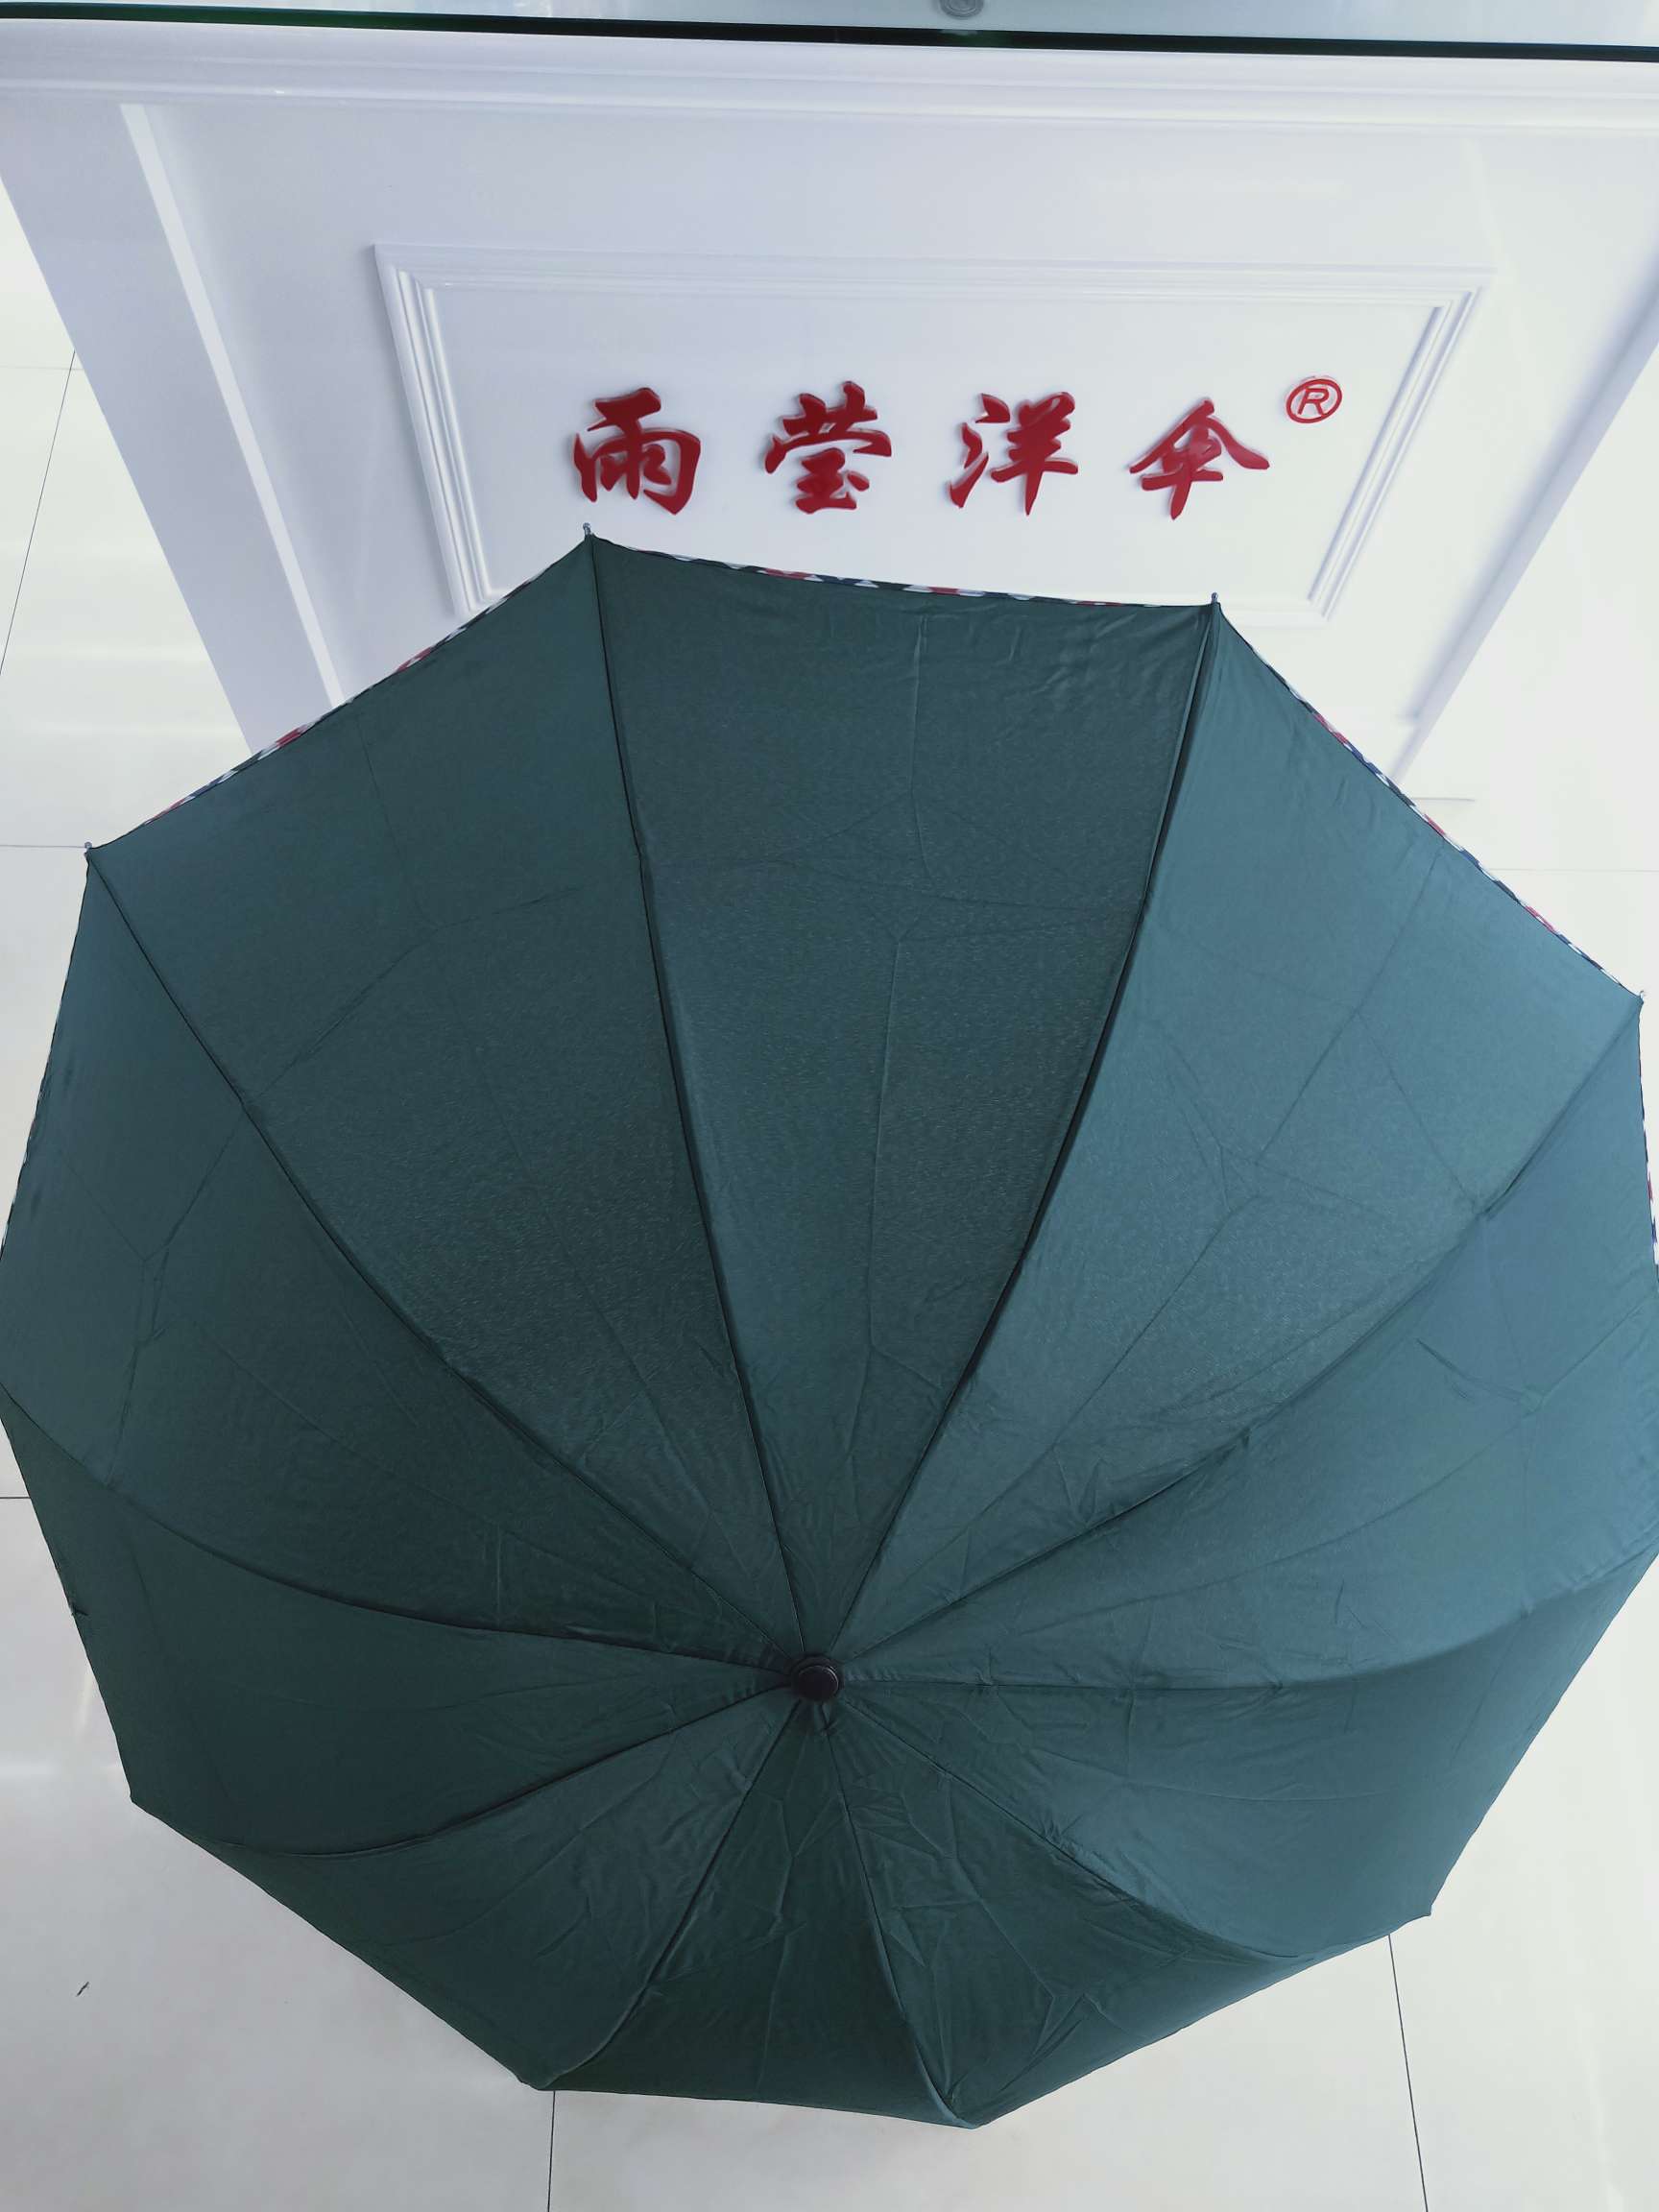 超大折叠素色经典雨伞双人学生男女中性款雨伞详情图1